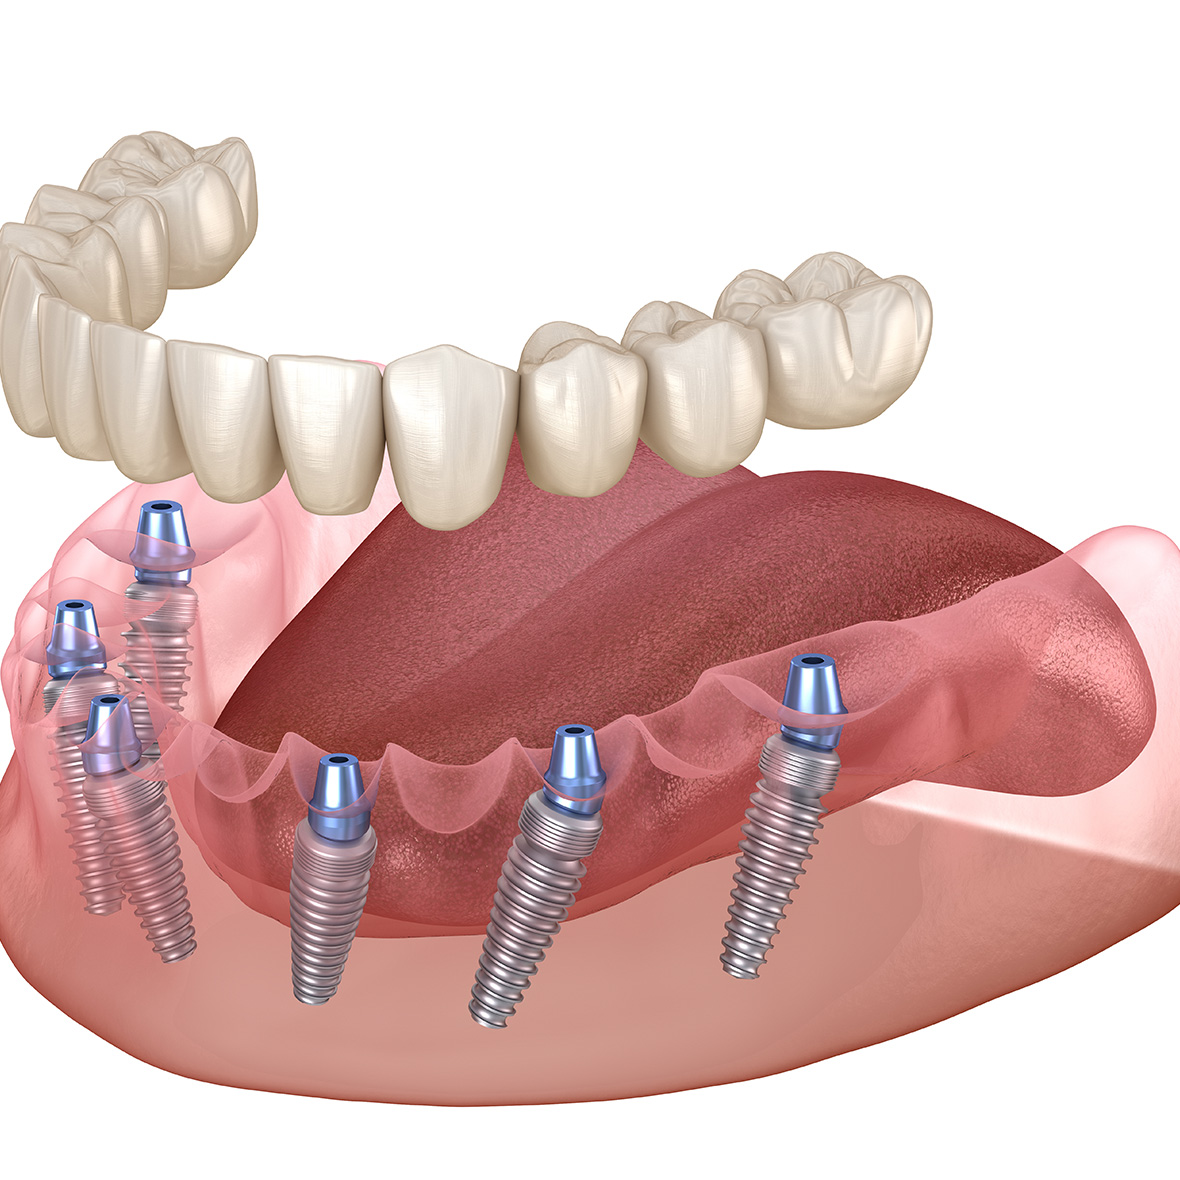 All-on-6: Zahnersatz auf 6 Implantaten.